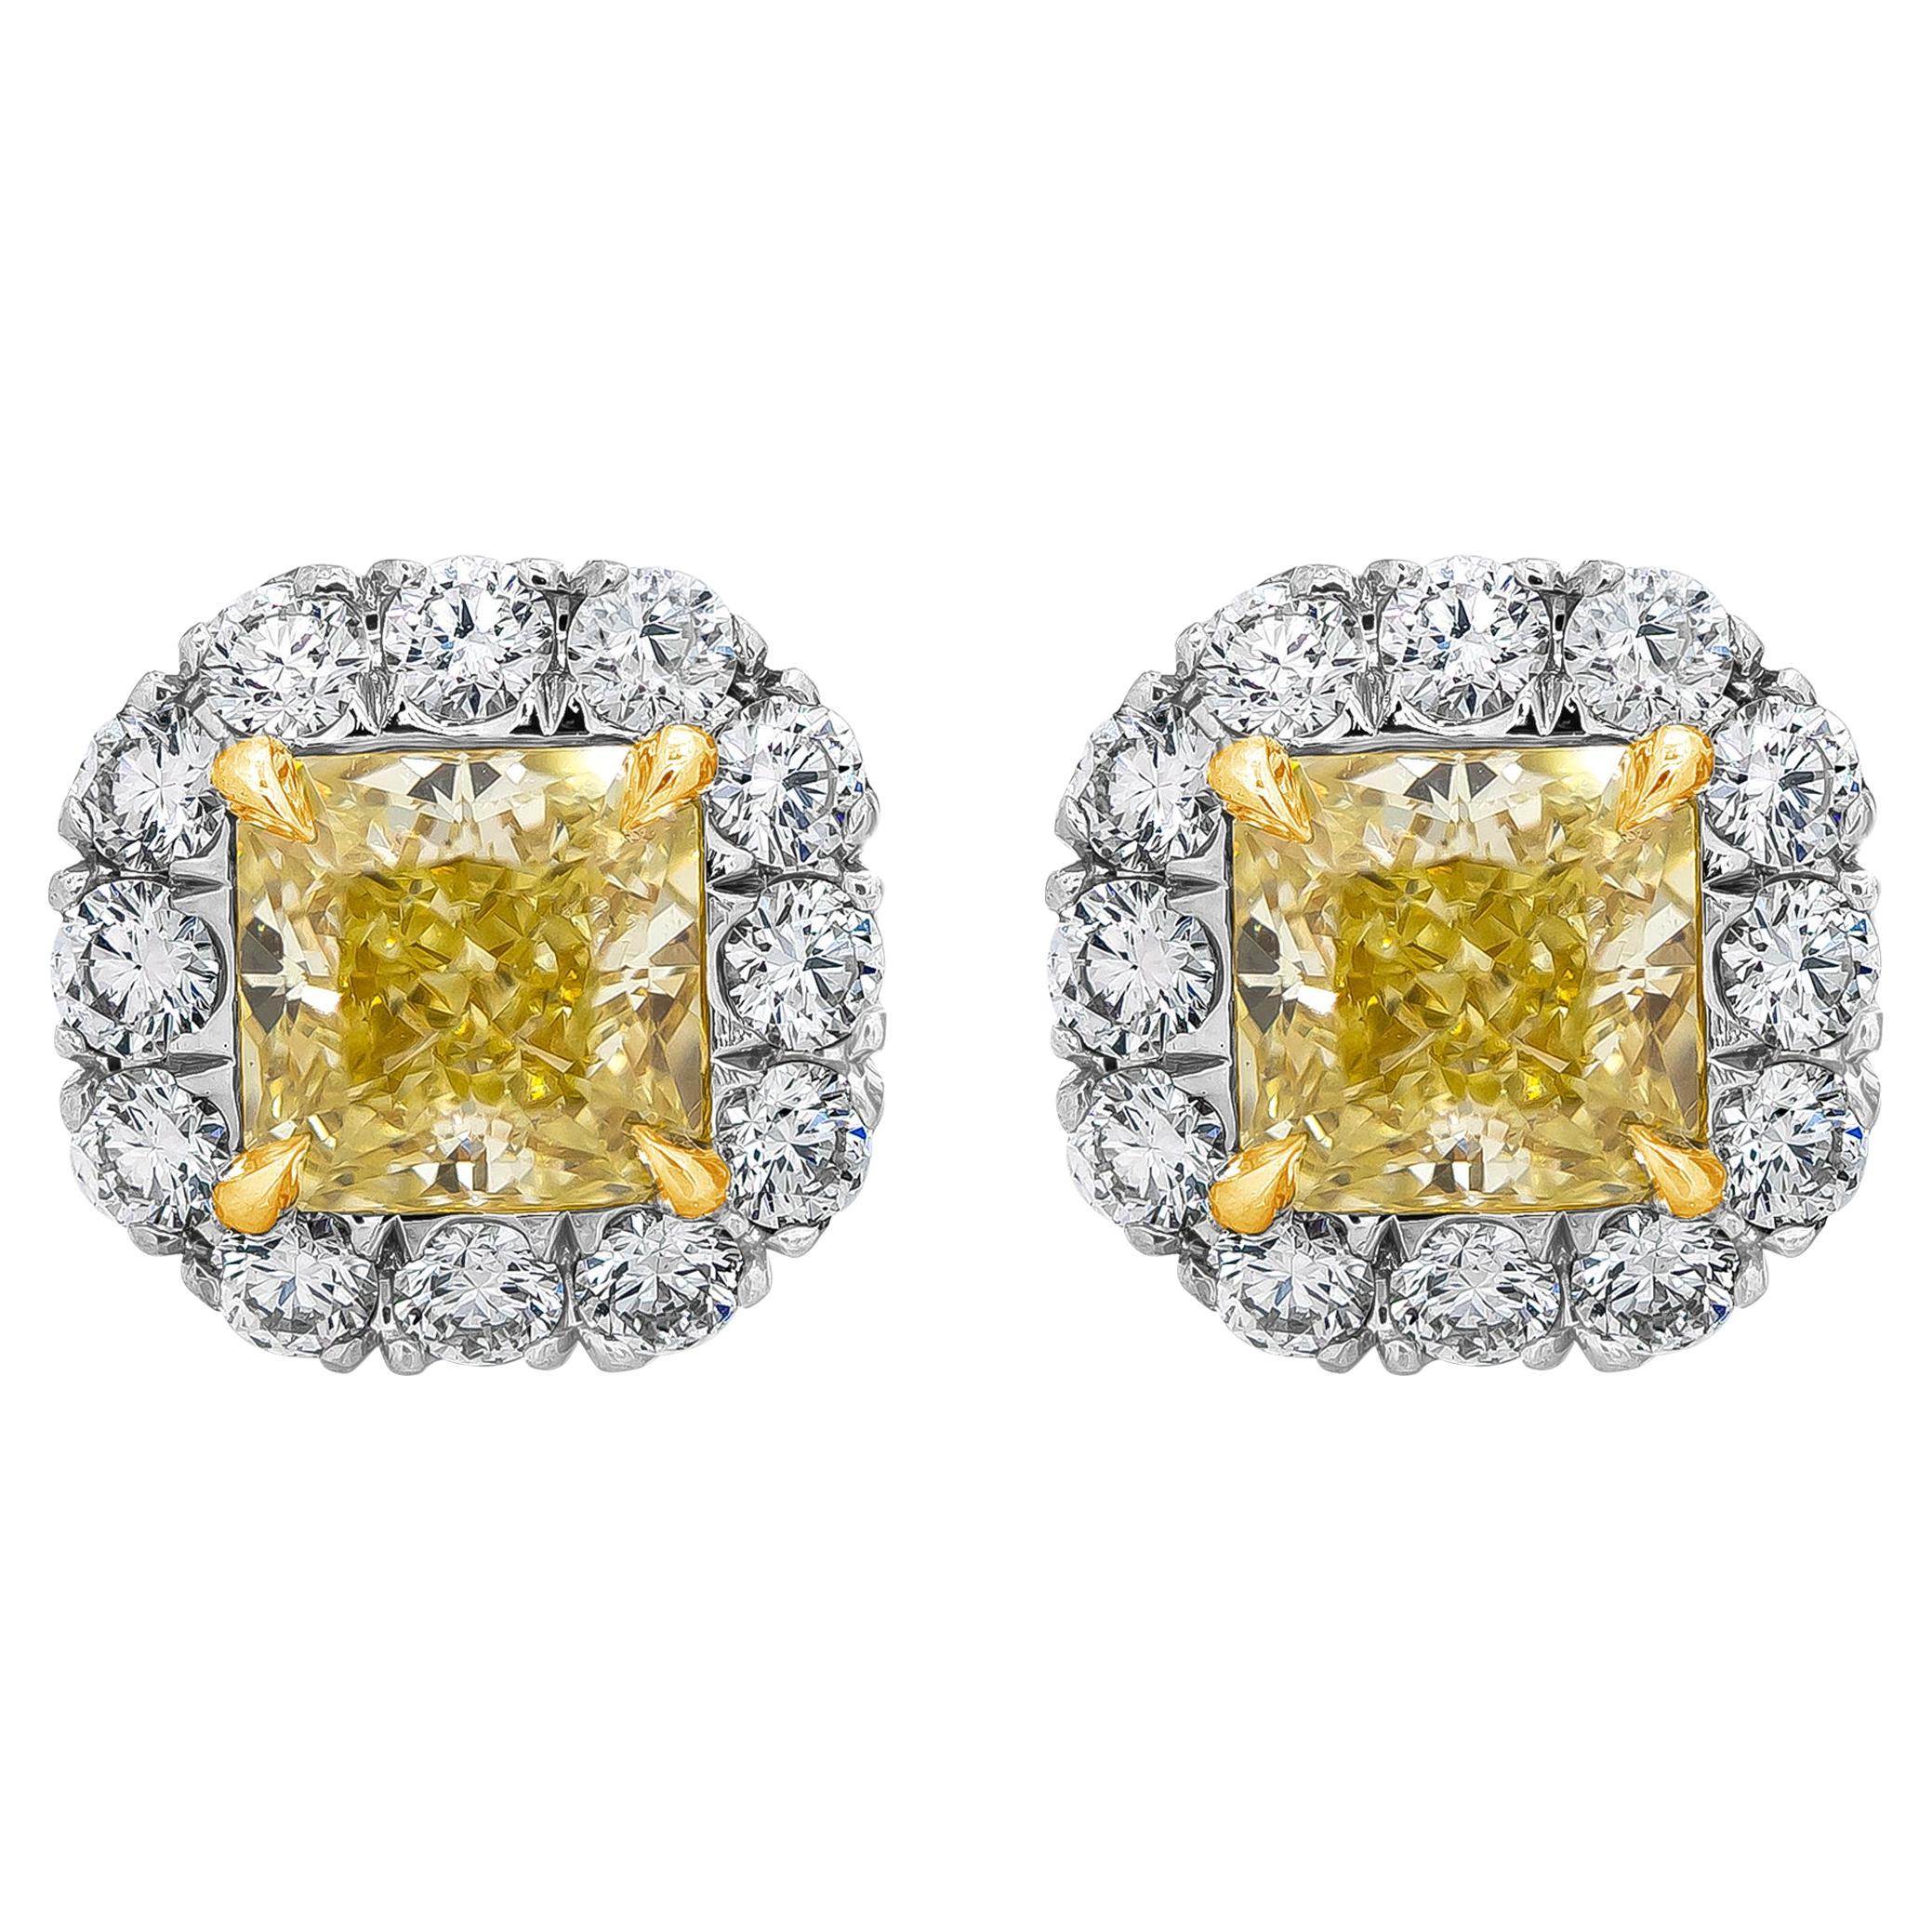 Clous d'oreilles en diamants jaunes fantaisie taille radiant de 1.45 carat au total, certifiés par le GIA